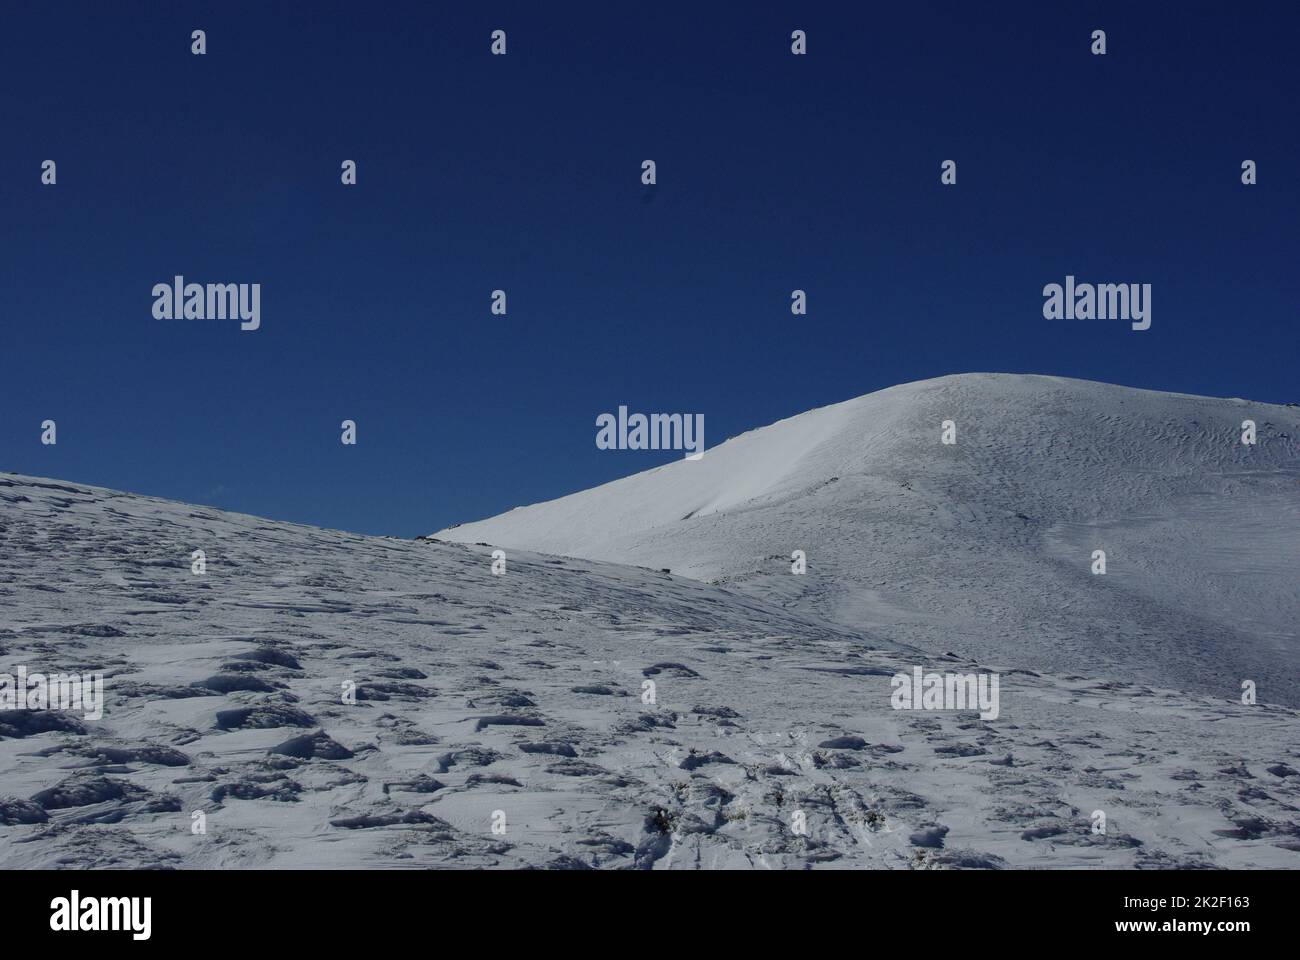 Berge mit bedecktem Schnee und Bergsteiger Stockfoto